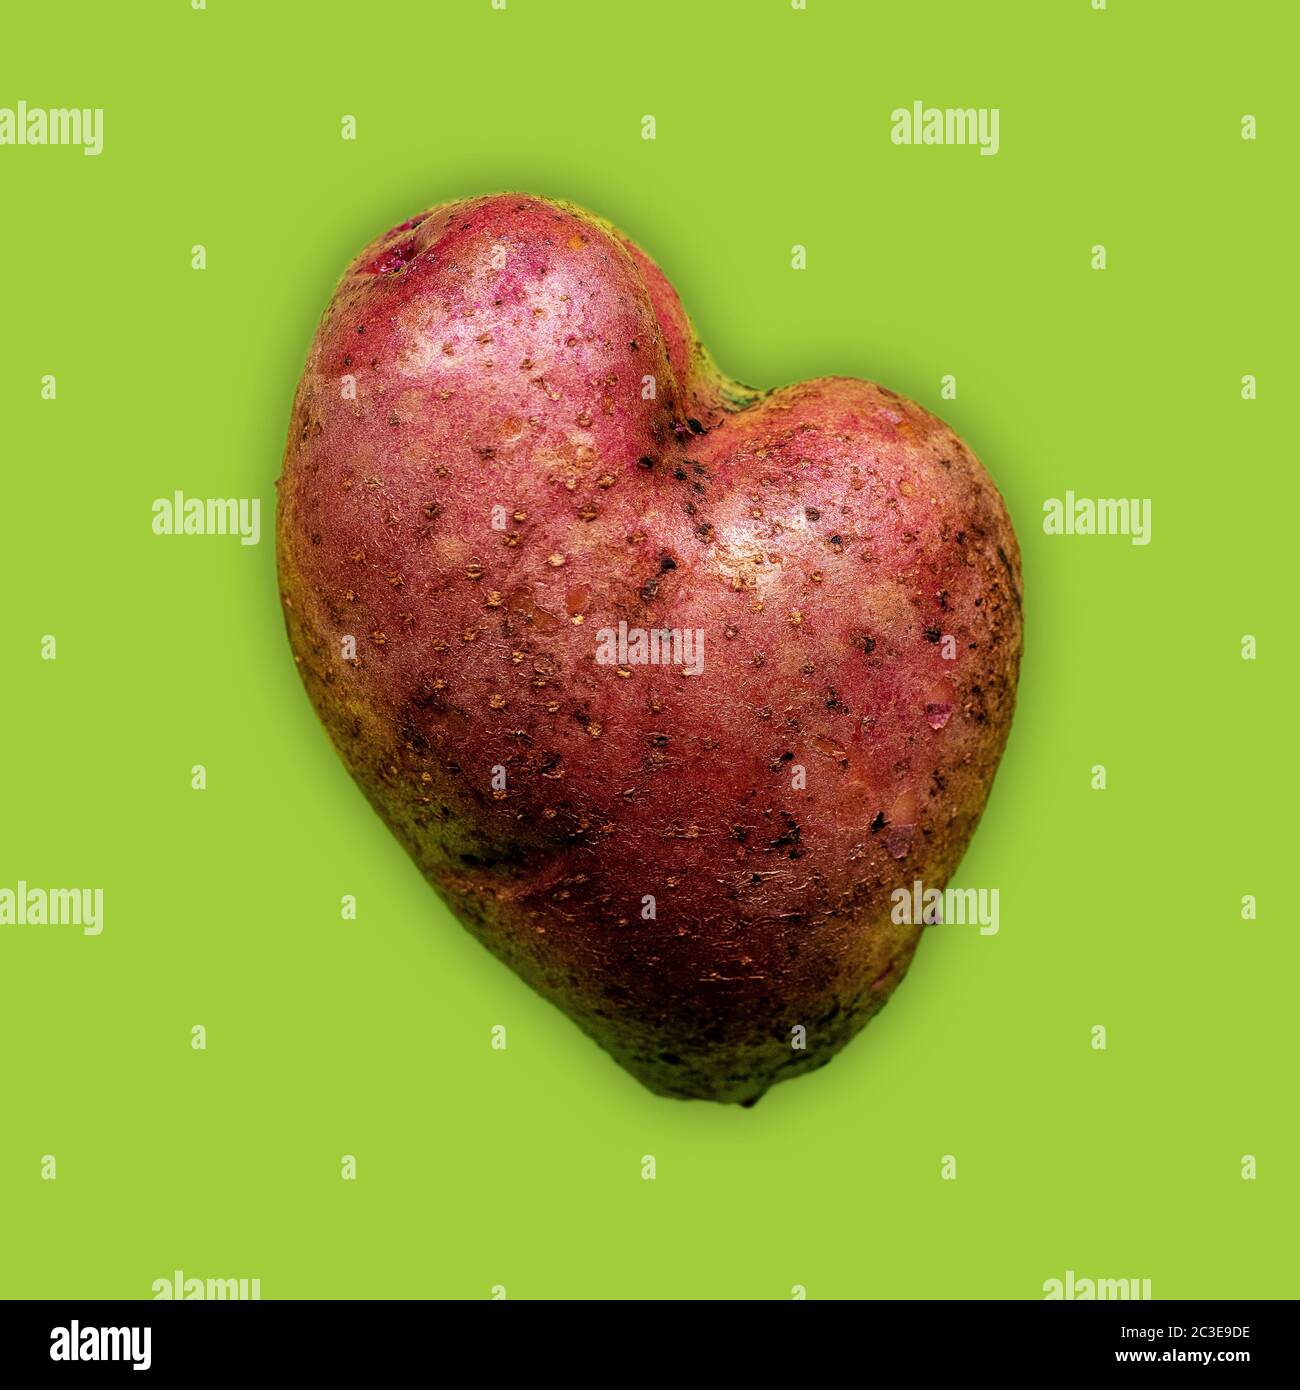 Patata a forma di cuore con buccia rossa su sfondo verde Foto Stock